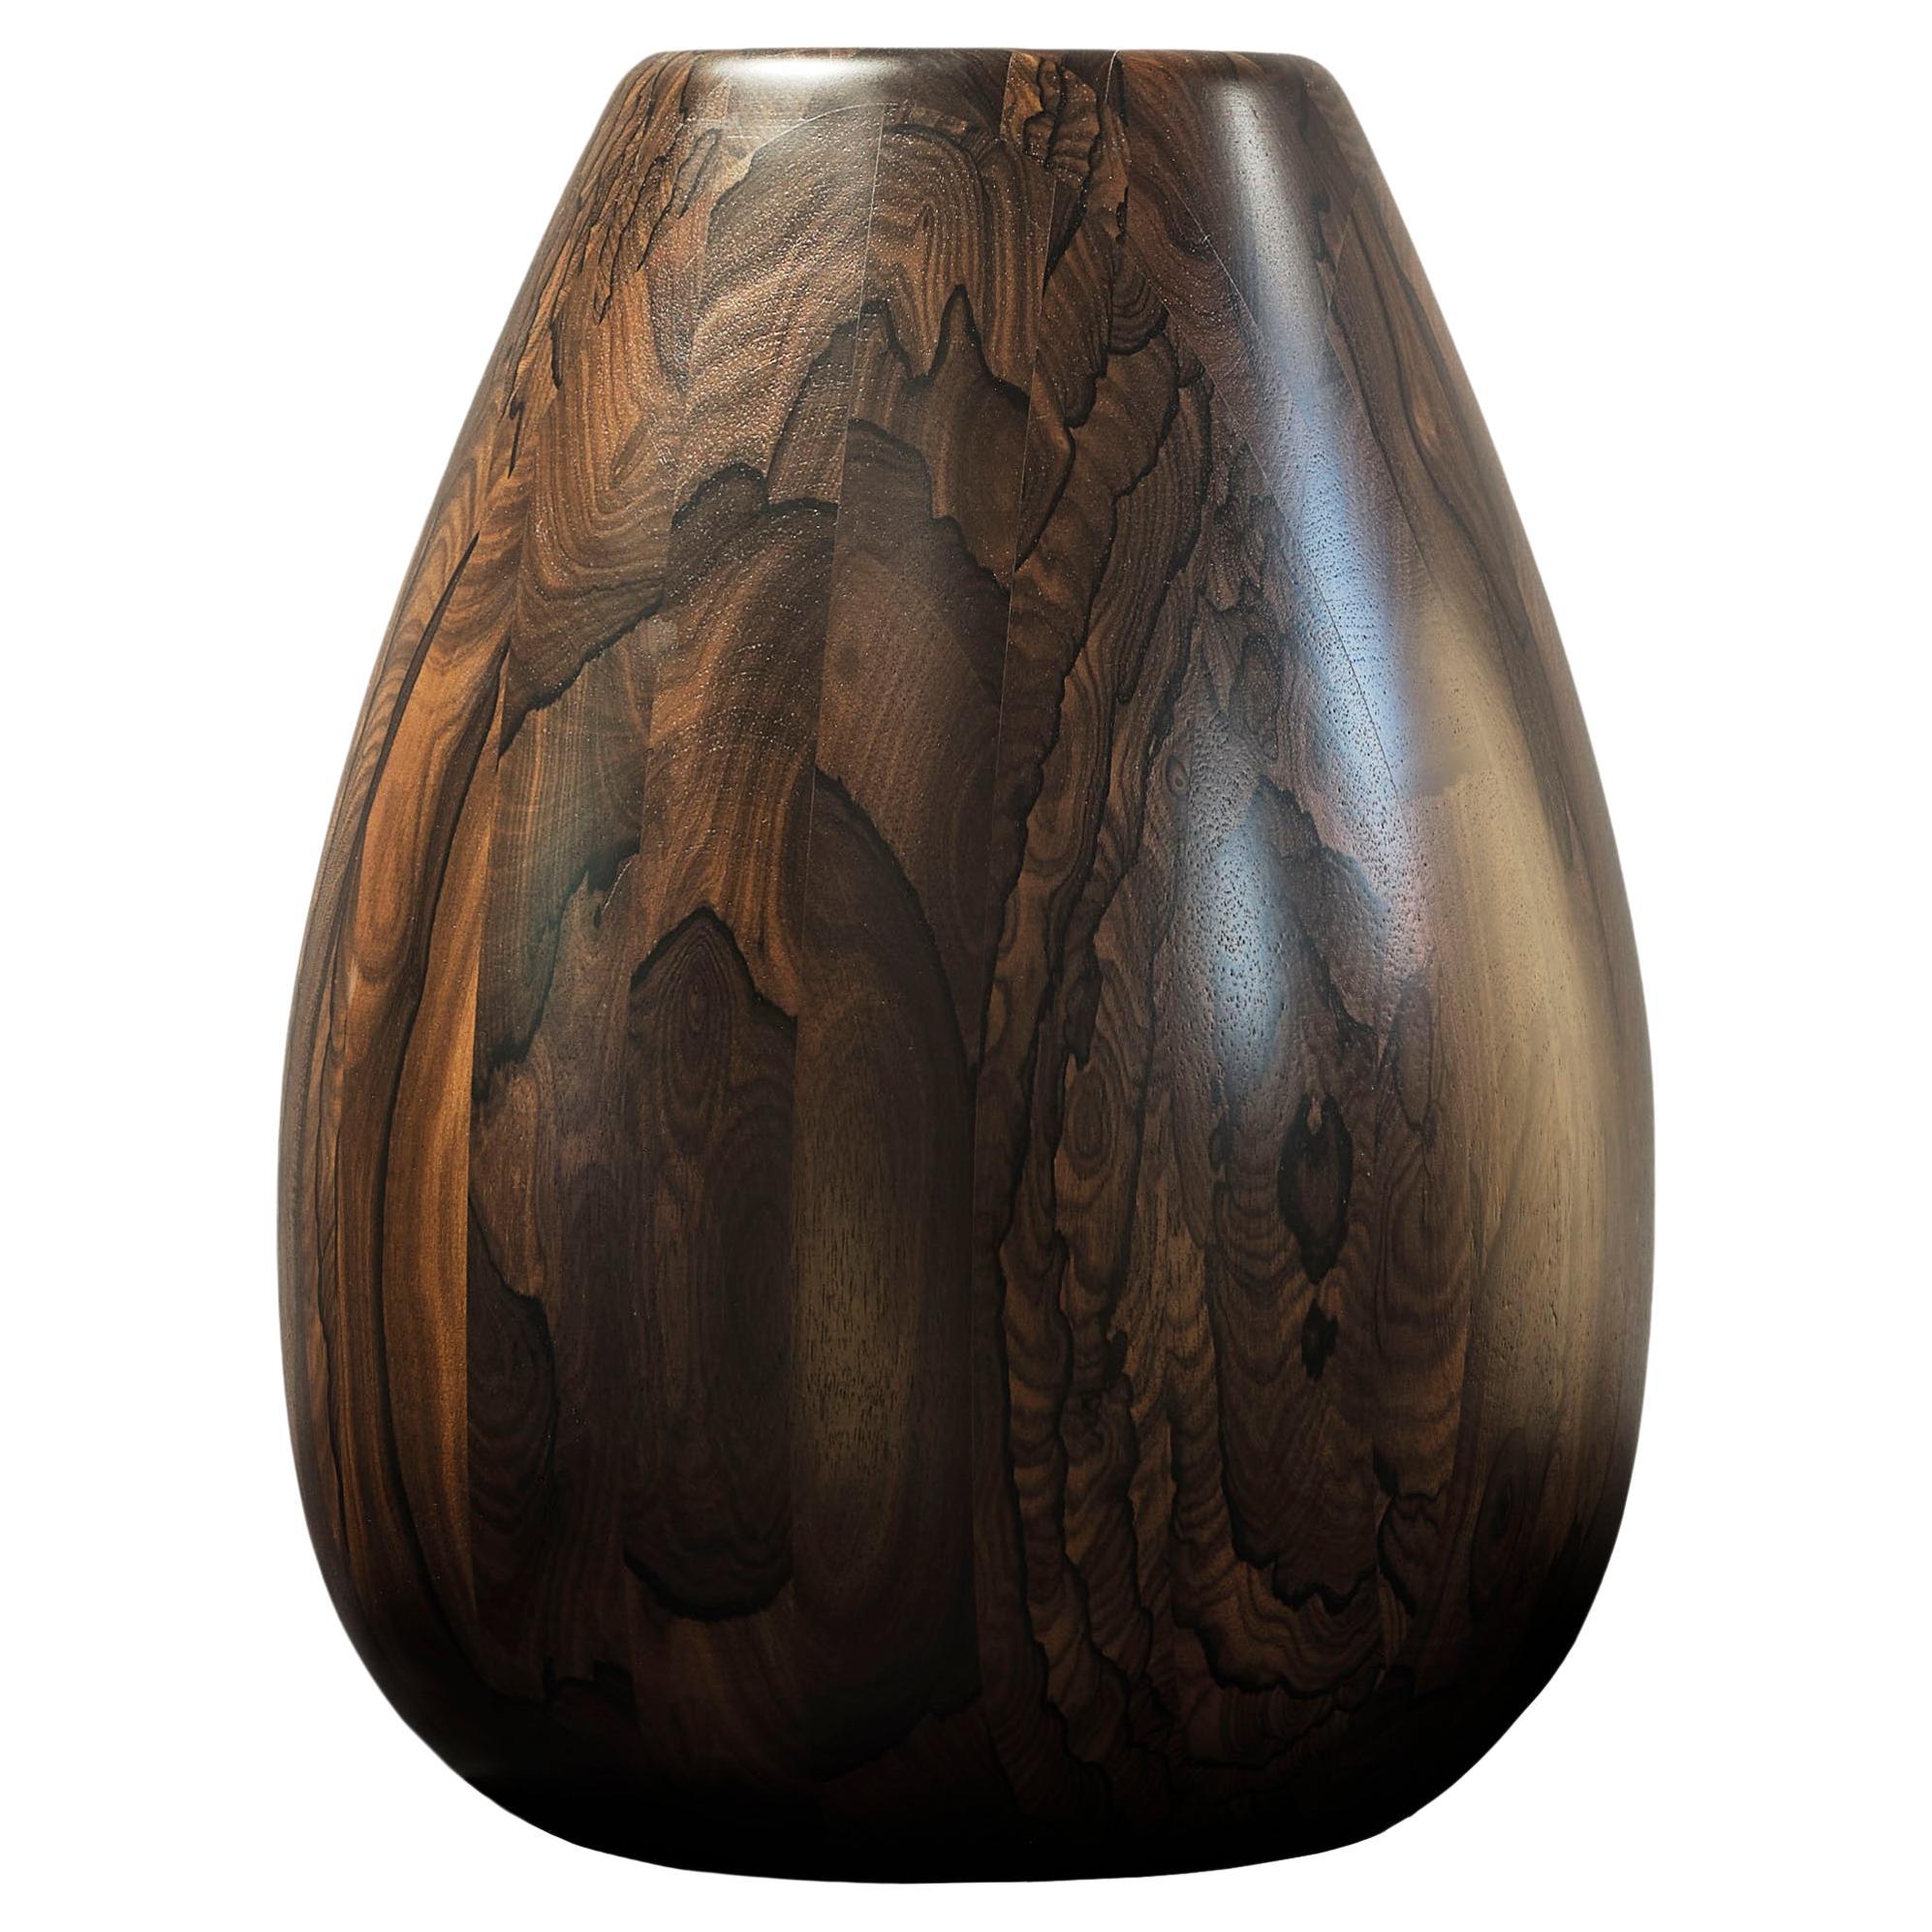 Ziricote Wood Vase h50 design Franco Albini - edit b Officina della Scala